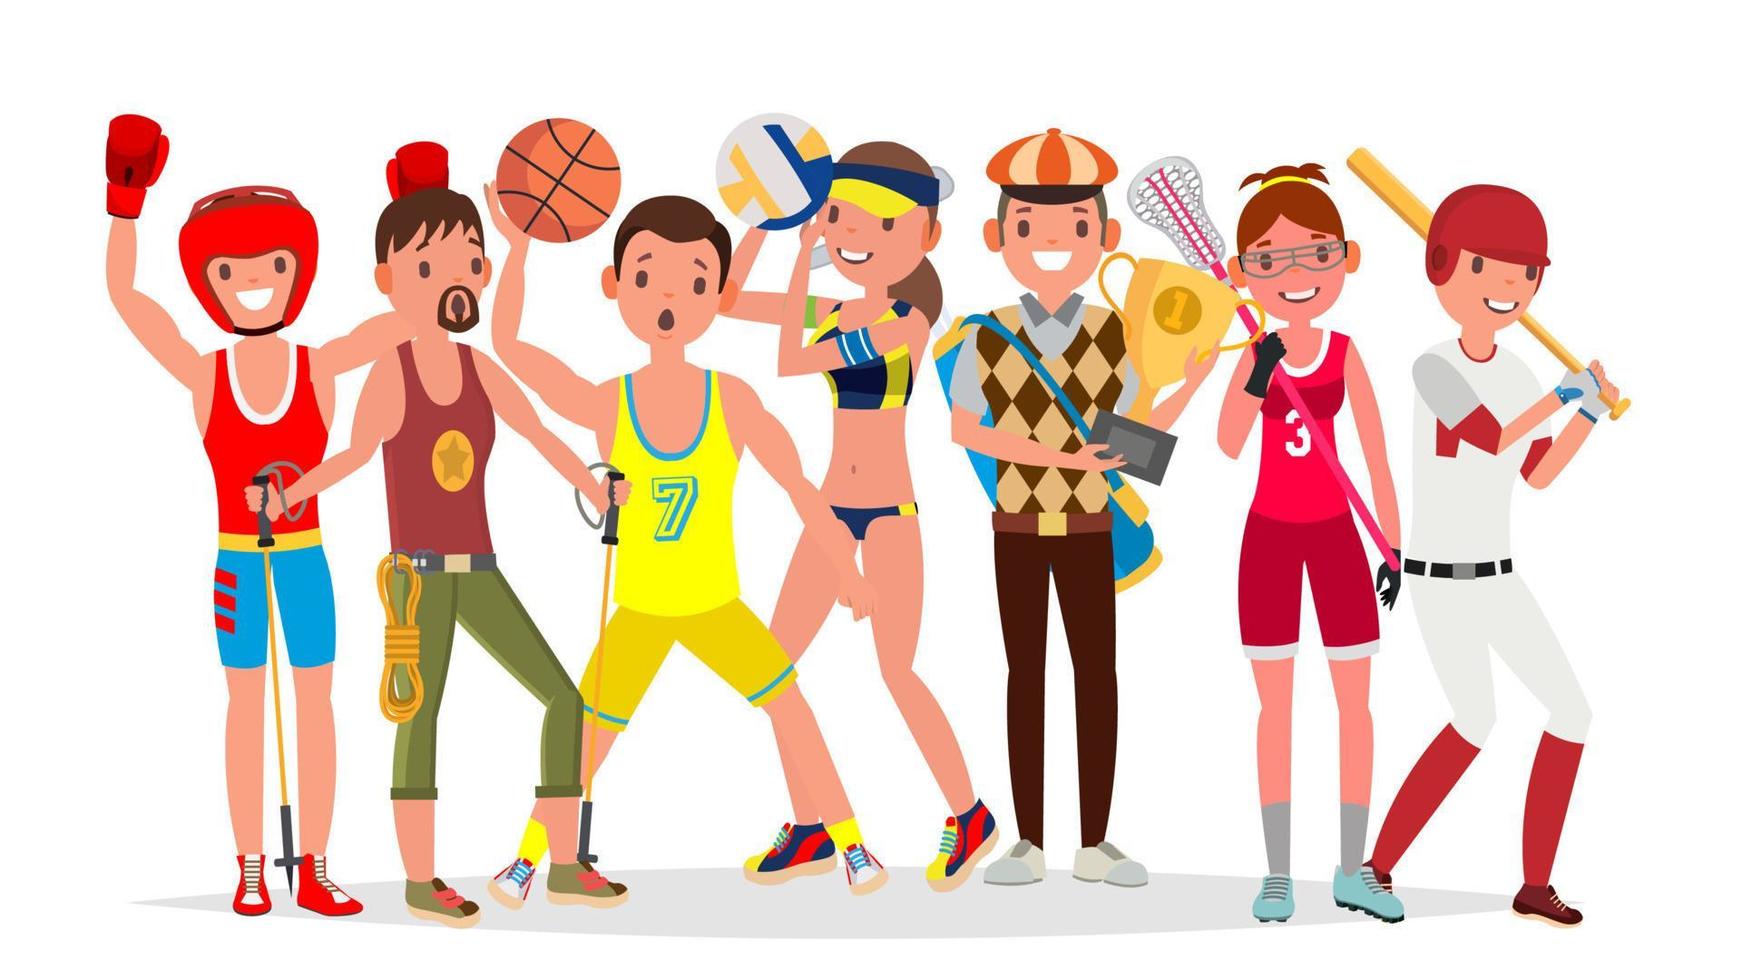 vector de deportes de verano. conjunto de jugadores de boxeo, senderismo, baloncesto, voleibol, golf, lacrosse, béisbol. aislado en la ilustración de dibujos animados plana de fondo blanco